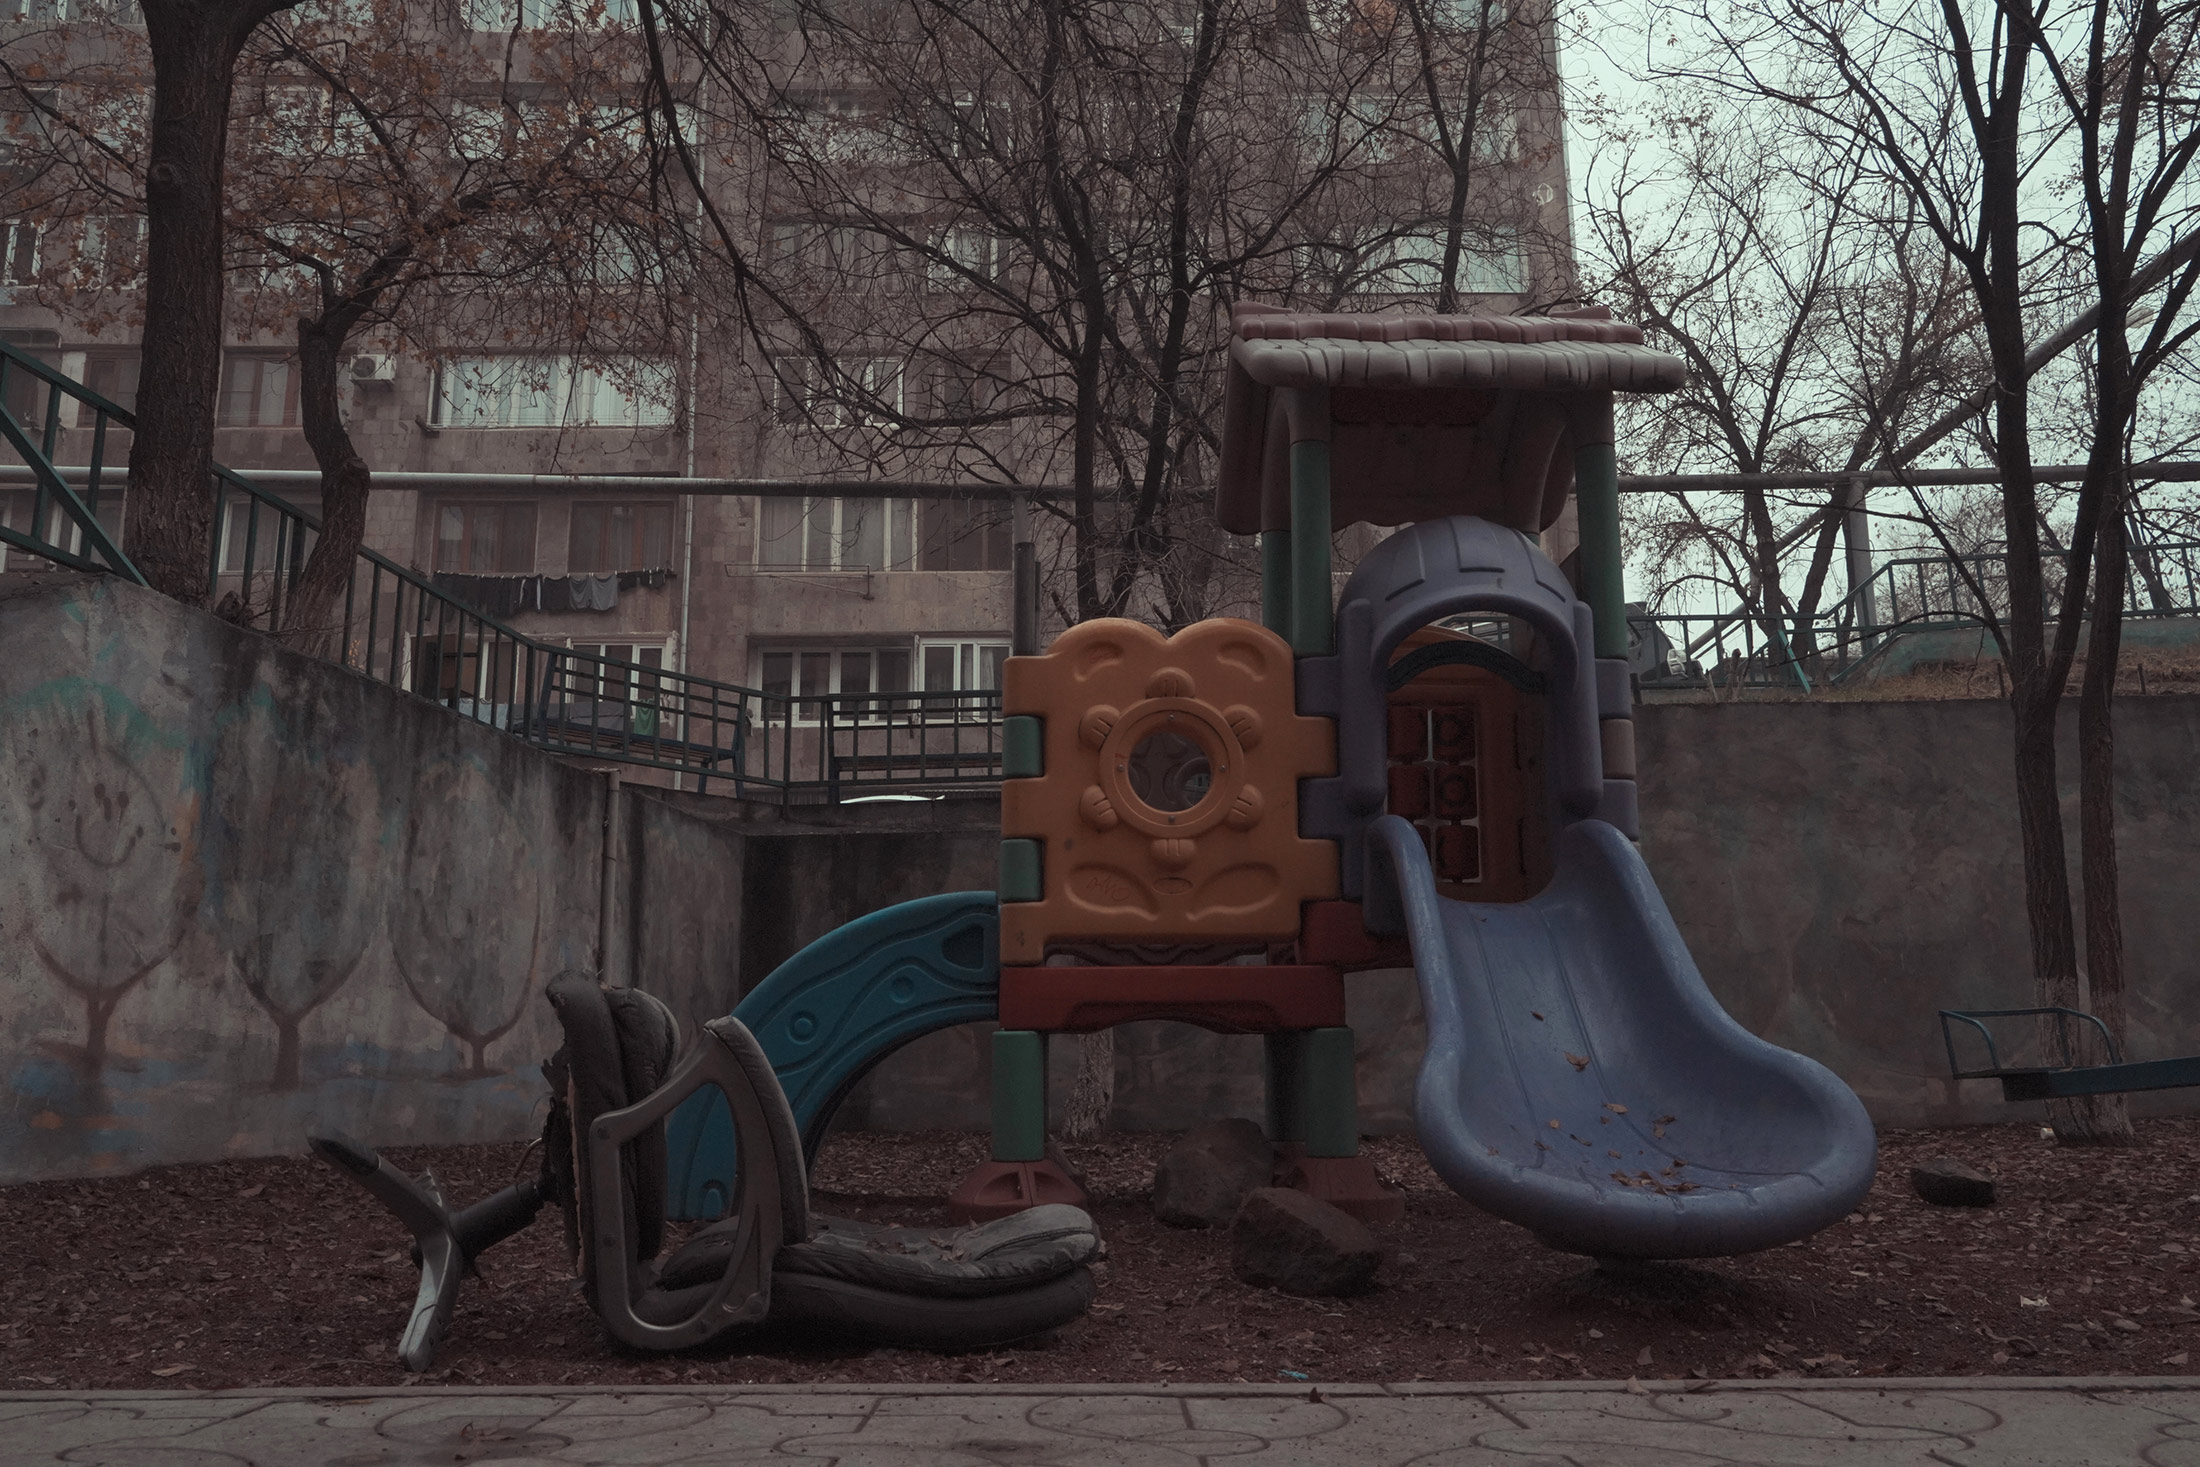 Հայաստան, Երևան, Աղբյուր Սերոբի 11/1, խորհրդային պանելային շենքերի մոտ նոր տեղադրված մանկական խաղահր ...